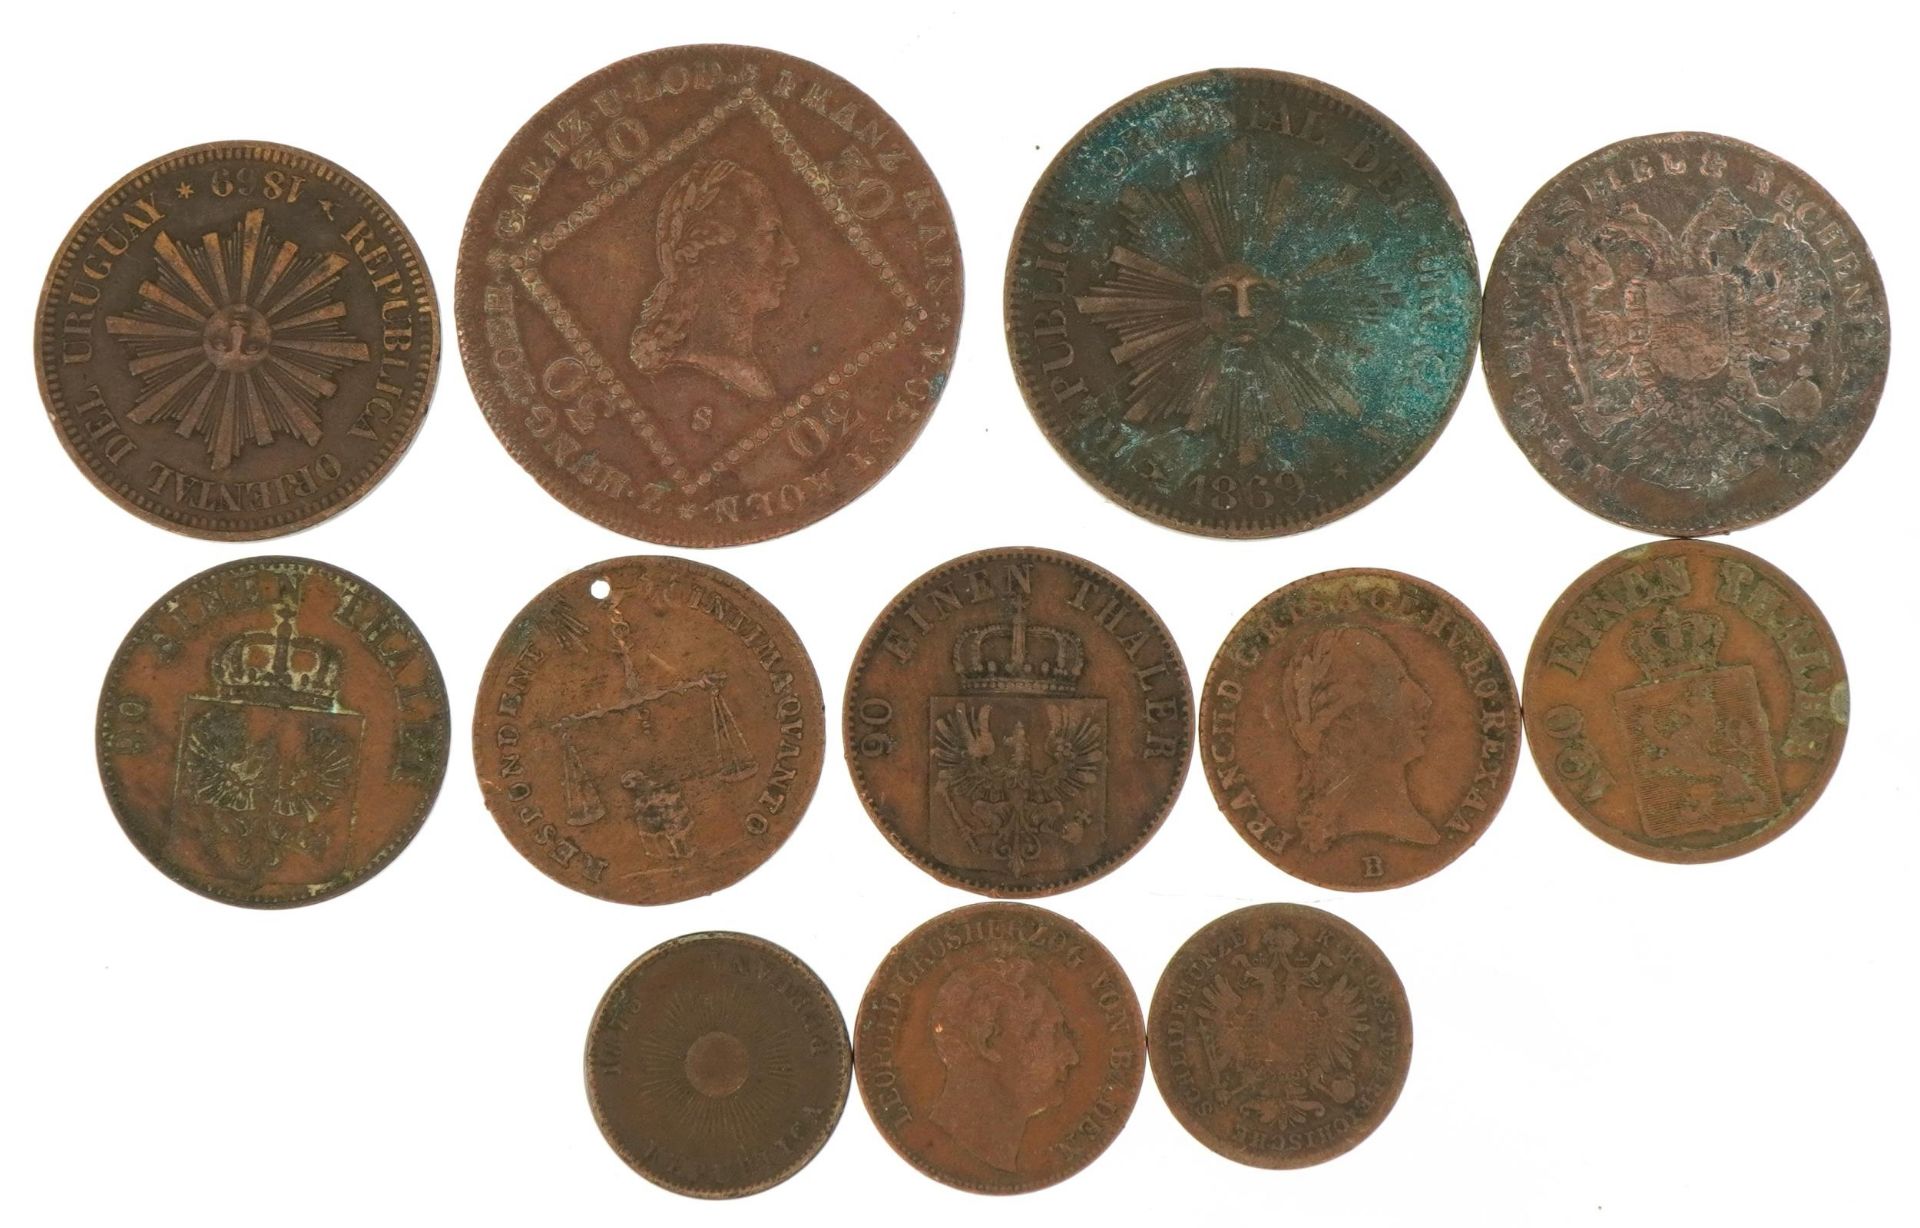 Antique world coinage including Uruguay two centesimos